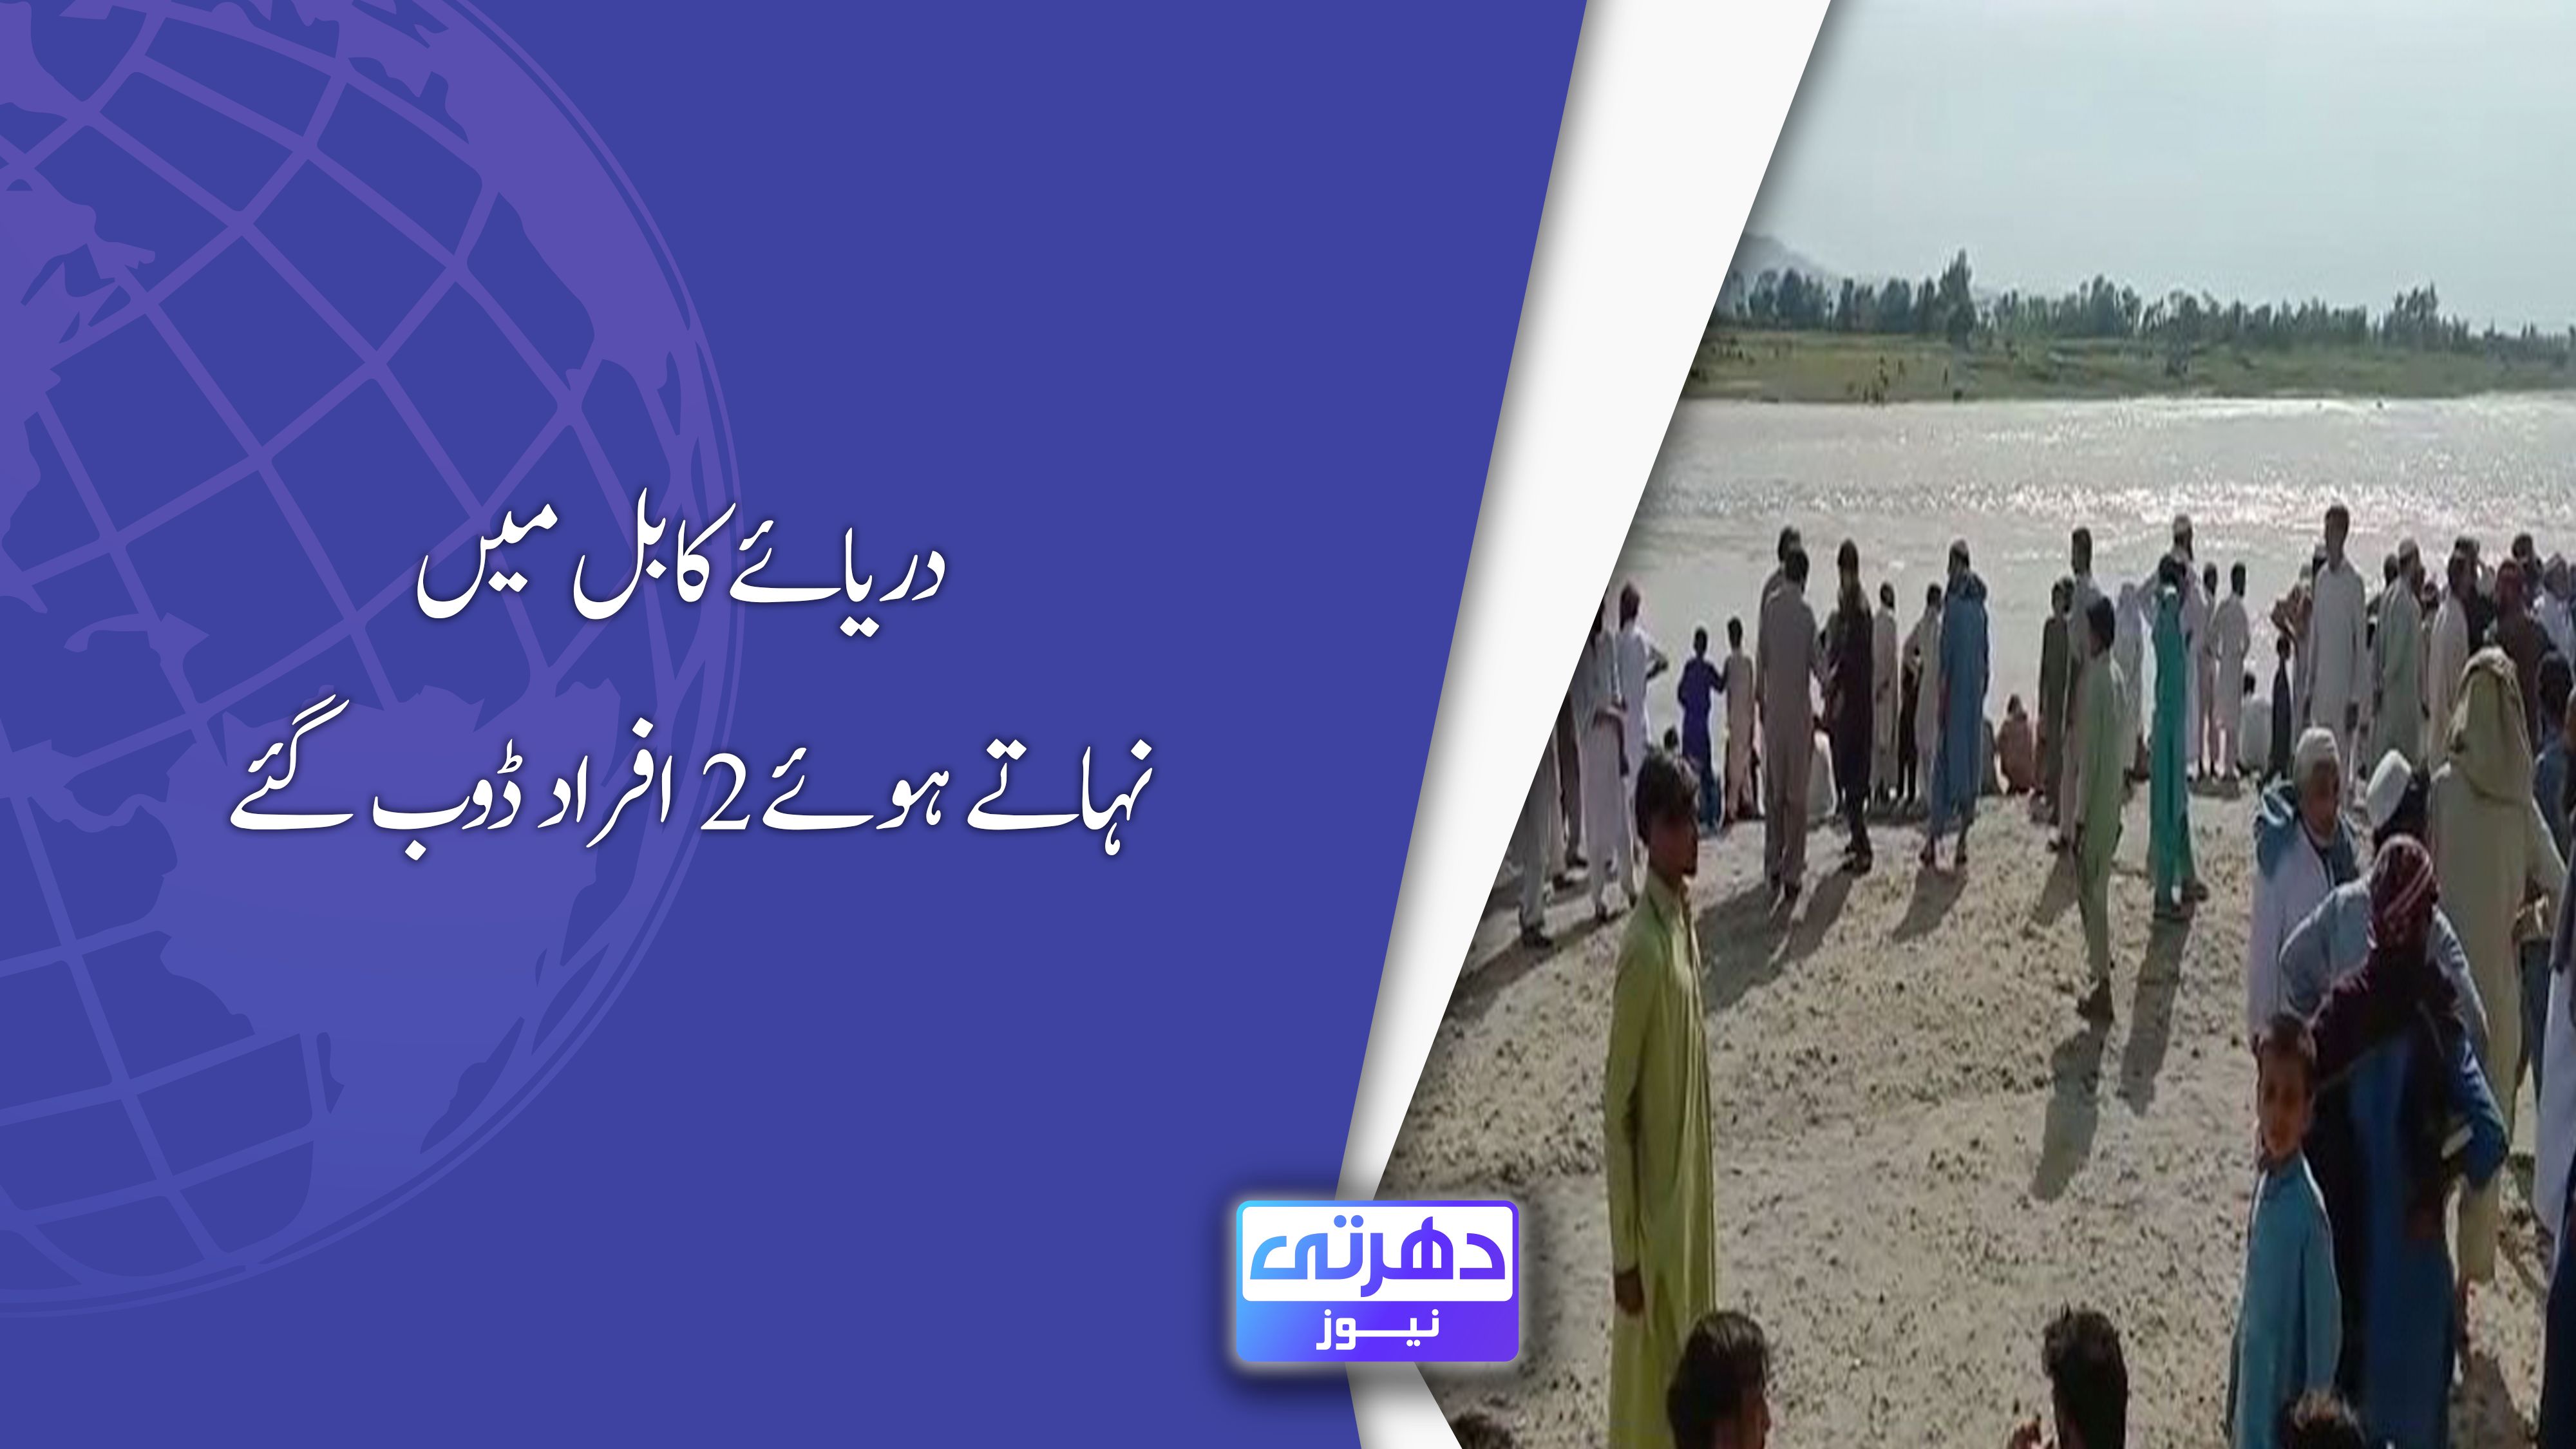 دریائے کابل میں نہاتے ہوئے 2 افراد ڈوب گئے